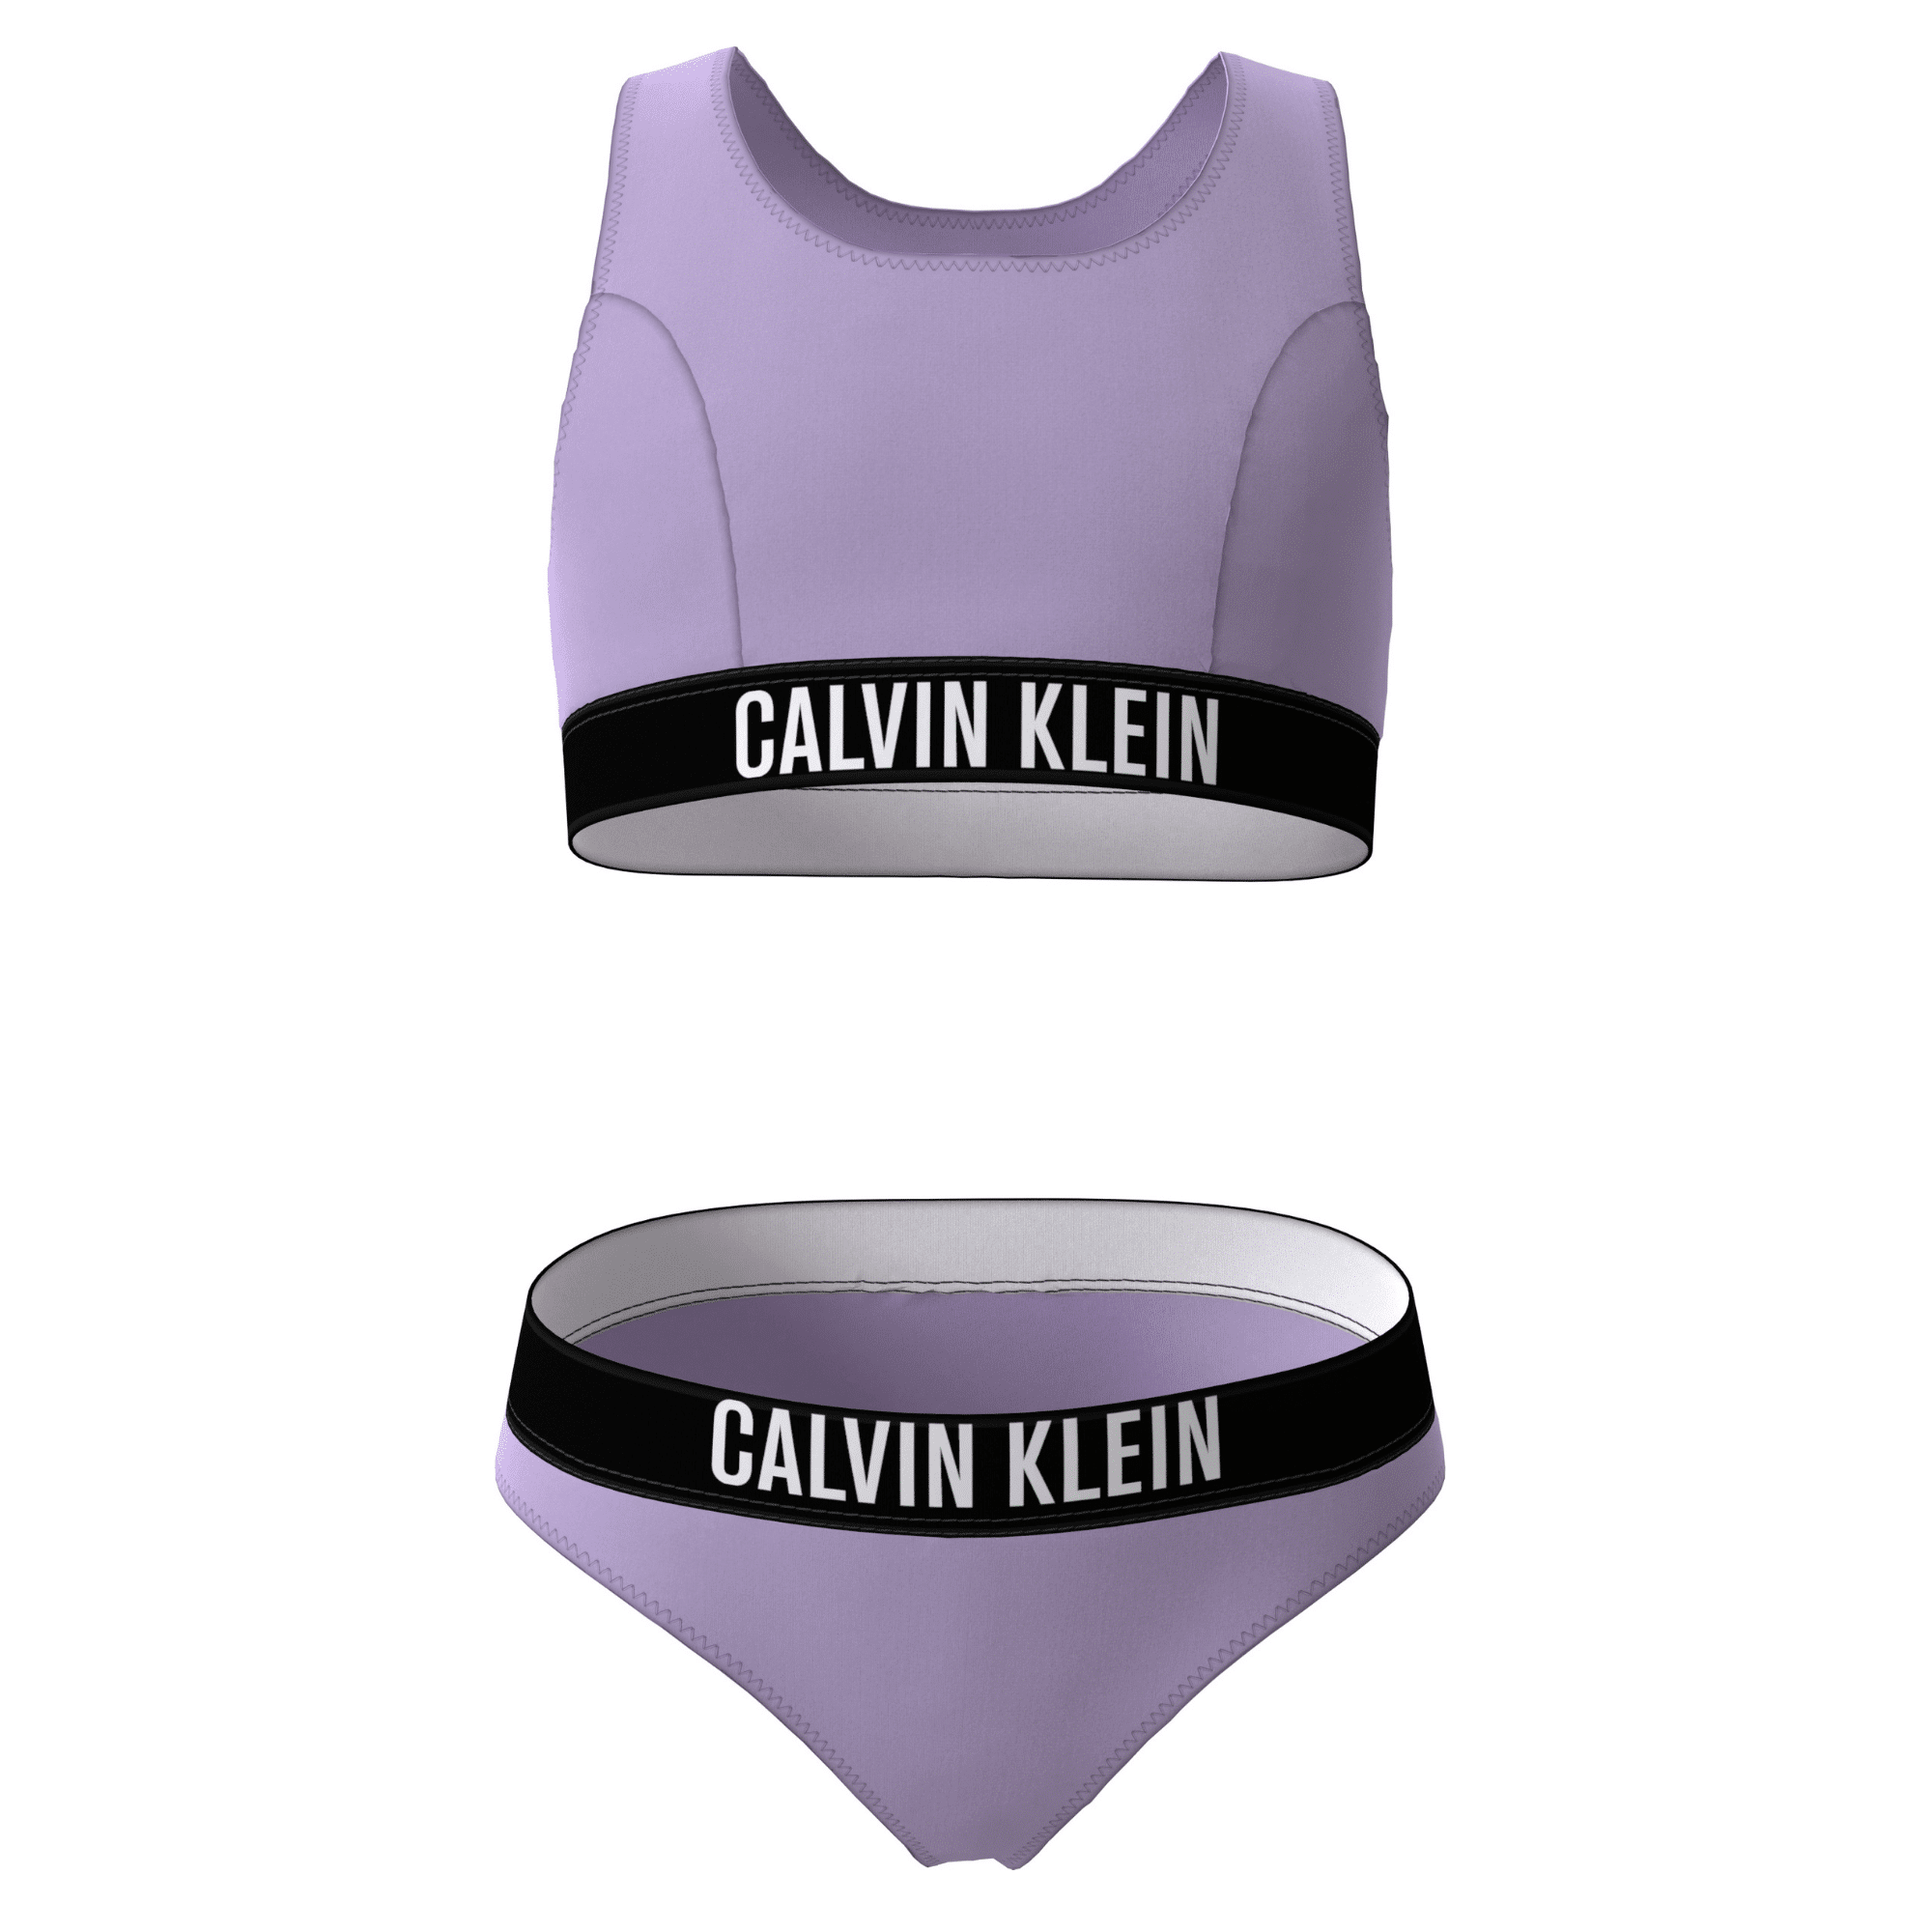 Calvin Klein Bralette Bikini Set Intense Power - Kids Life Clothing -  Children's designer clothing